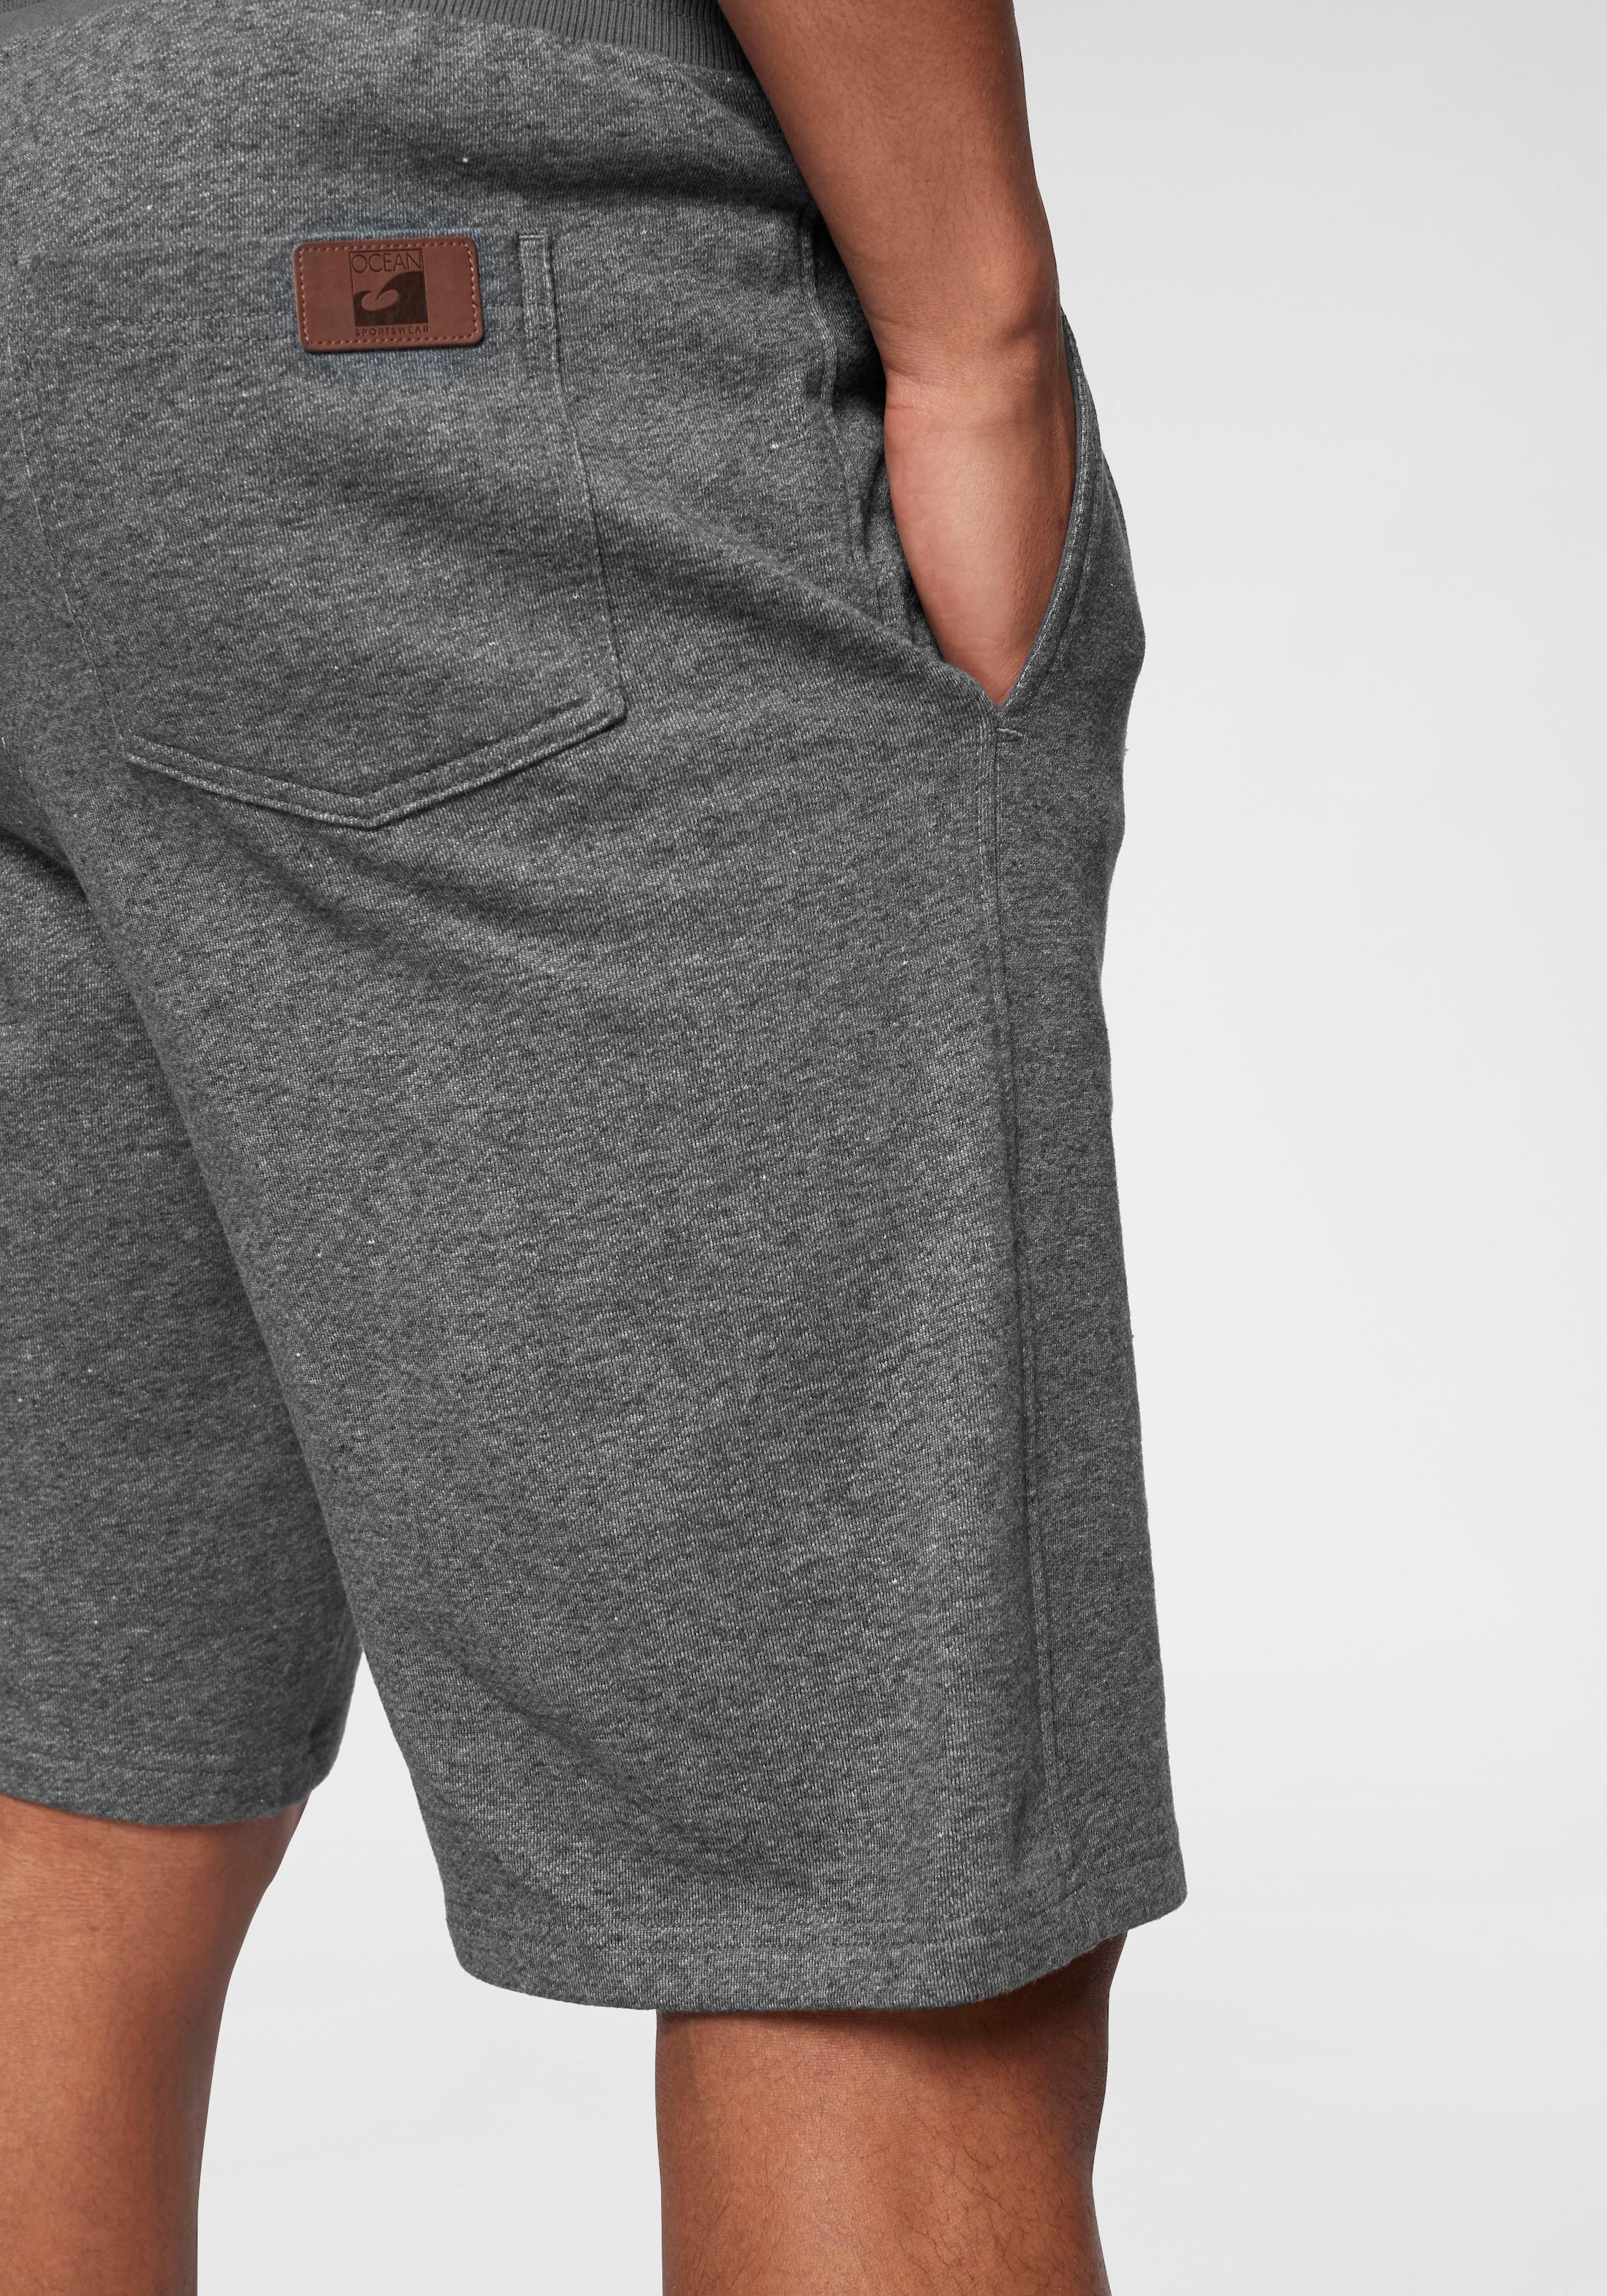 Ocean Sportswear Sweatshorts »Athleisure Sweat Shorts - Relax Fit«